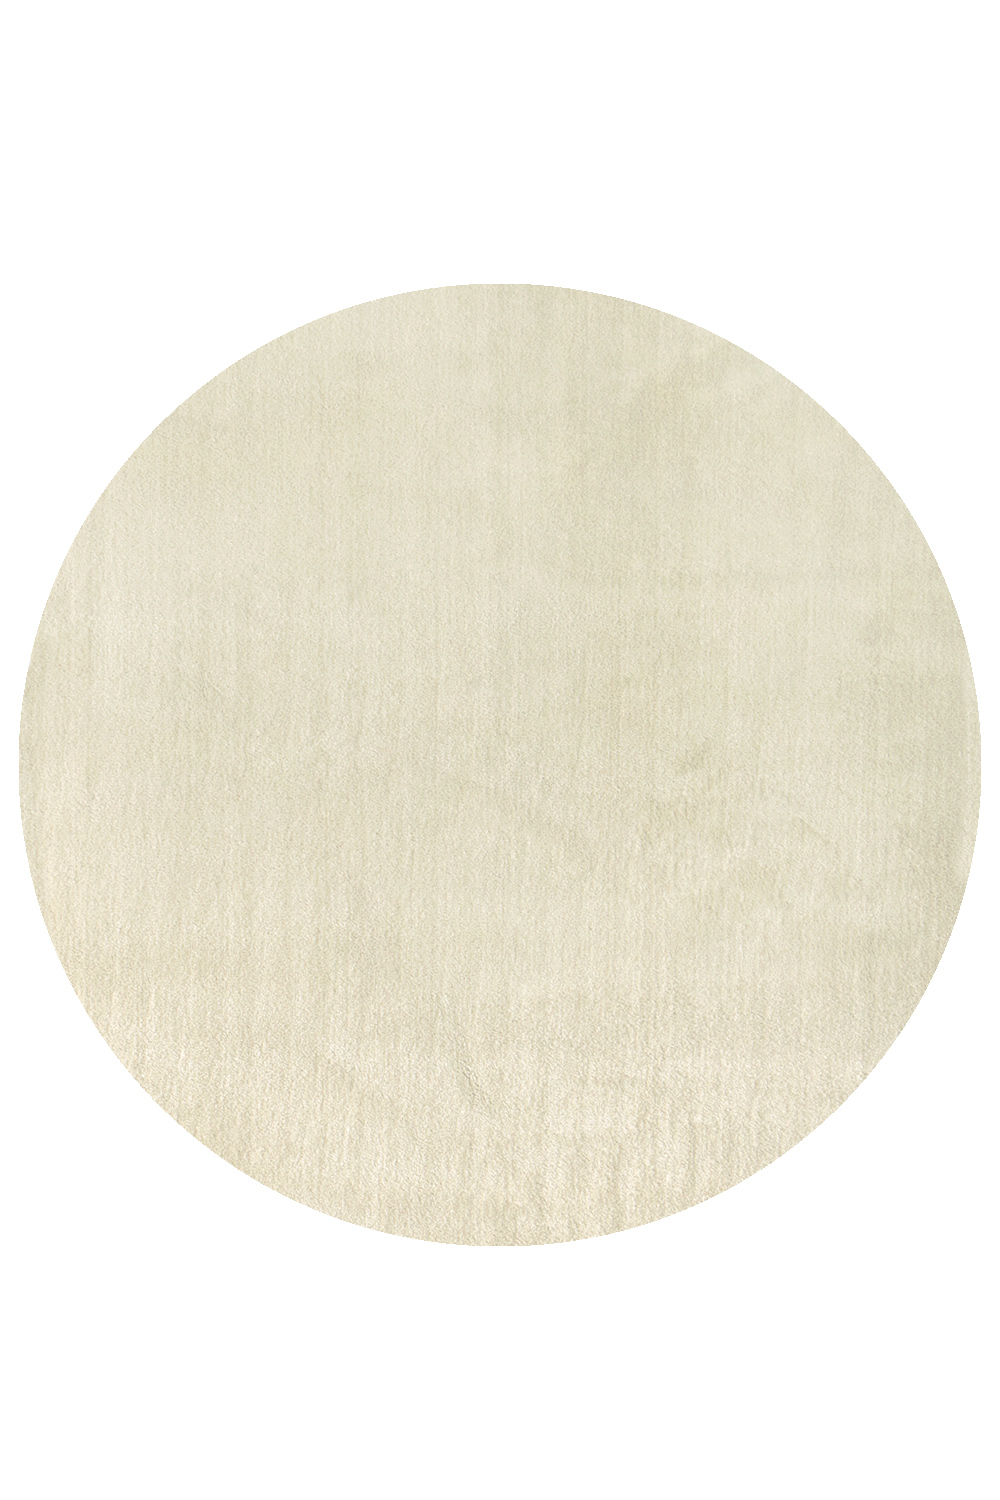 Kusový koberec Labrador 71351 056 Cream